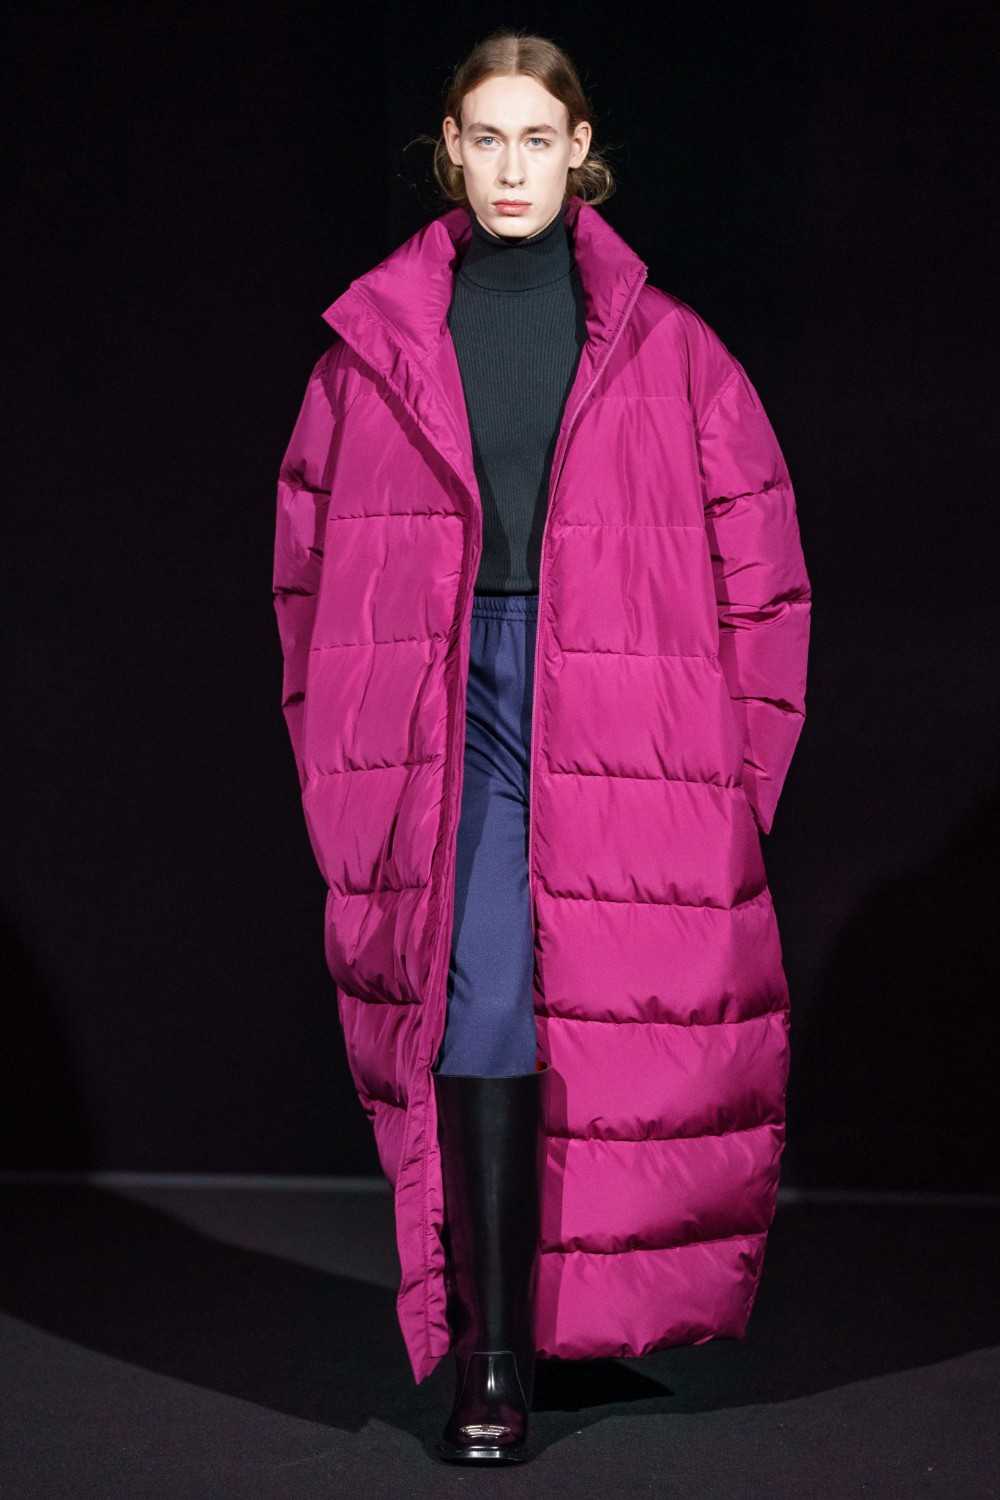 Модные тенденции пальто зима/весна/осень 2019 – 2020 года: 120 фото